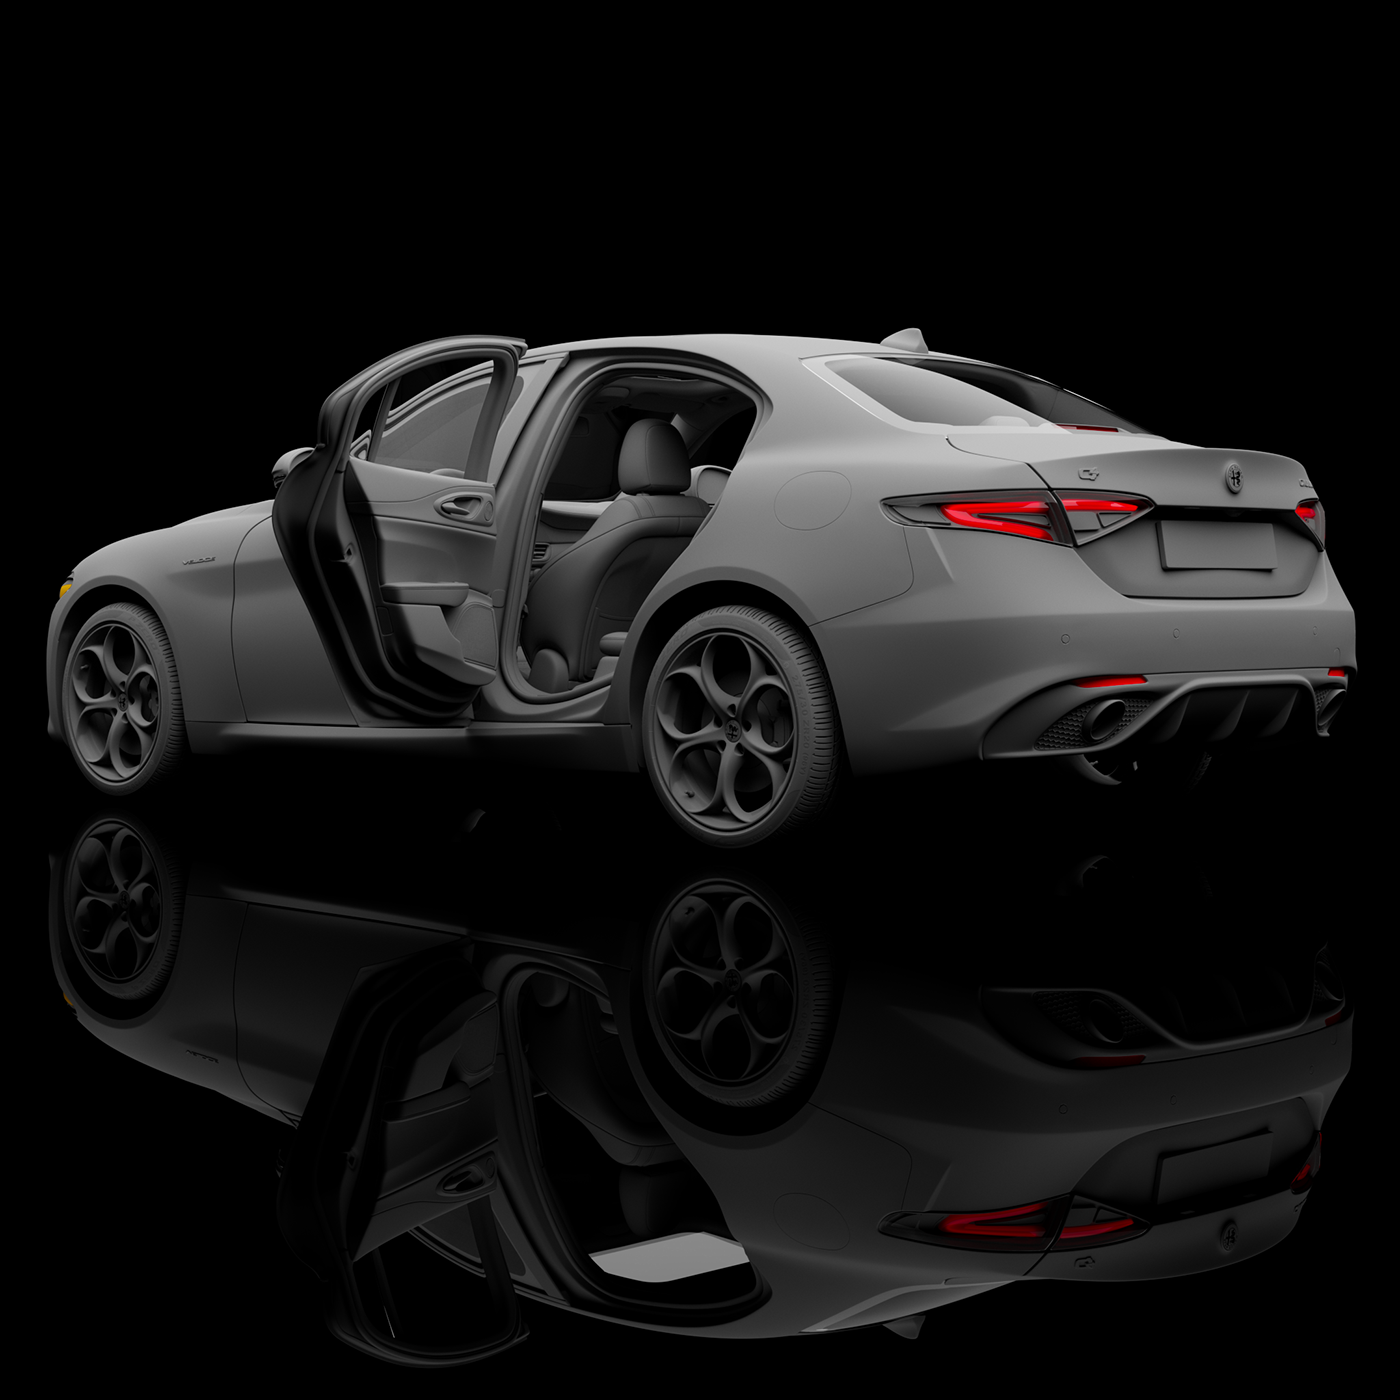 car automotive   3D visualization Render